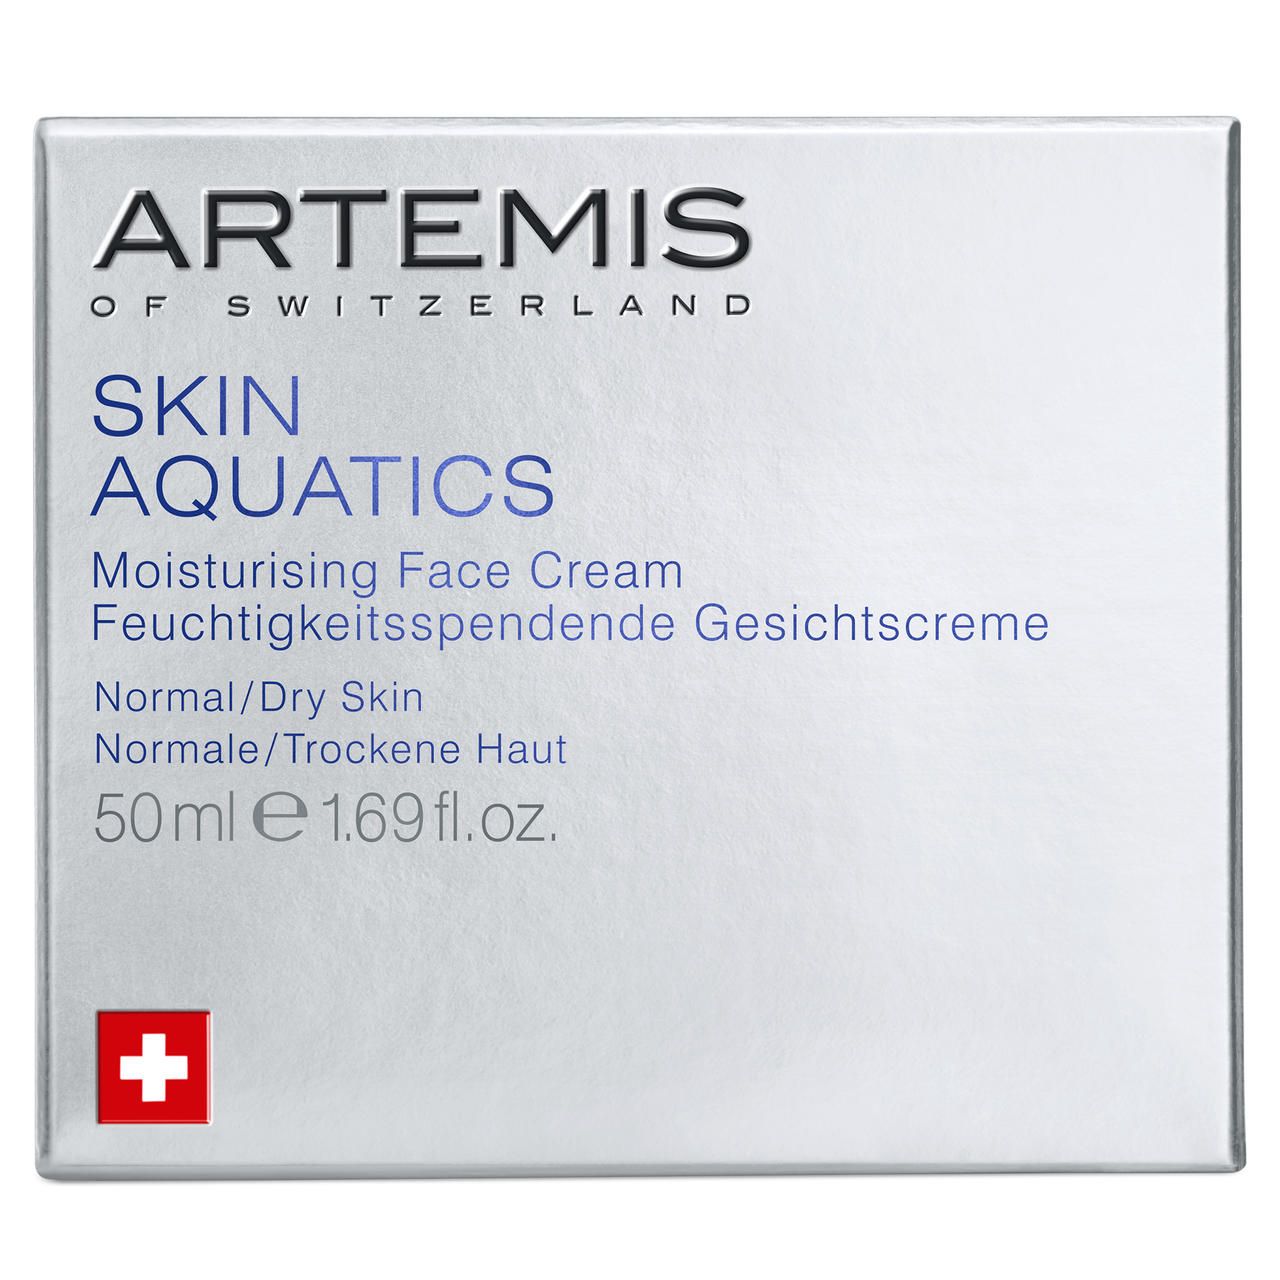 Artemis of Switzerland Skin Aquatics Moisturizing Face Cream